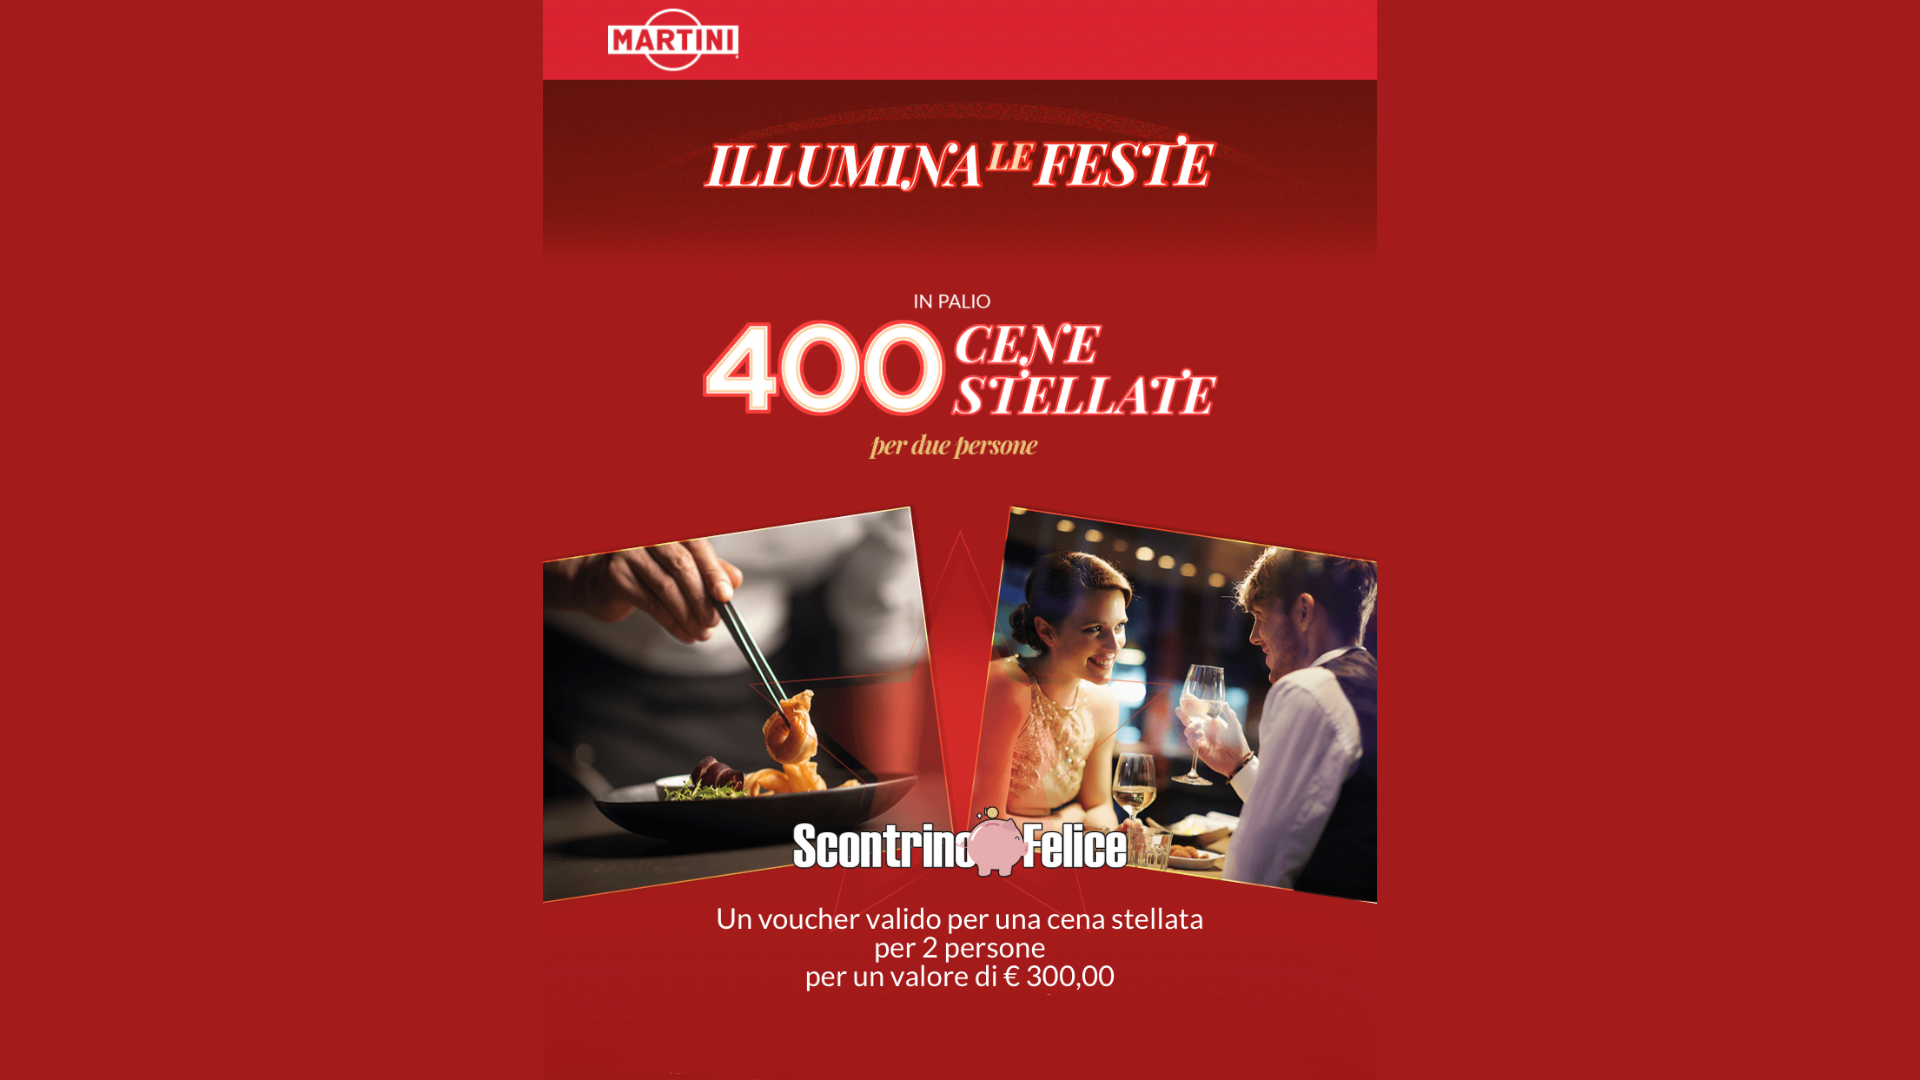 Concorso Martini “Illumina le feste”: vinci 400 cene stellate 2